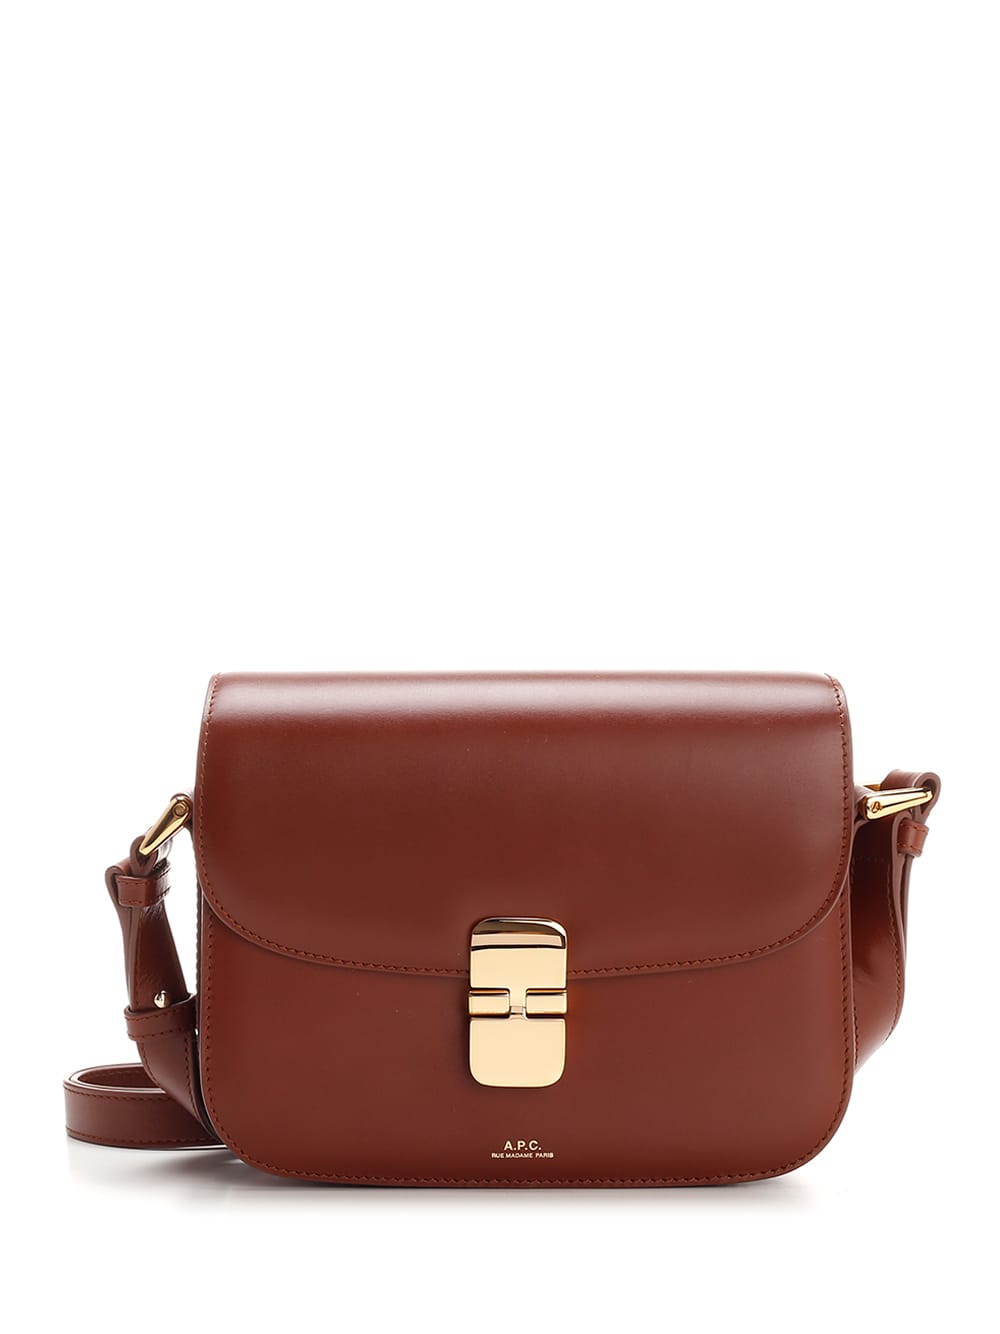 Apc Small Grace Shoulder Bag In Brown